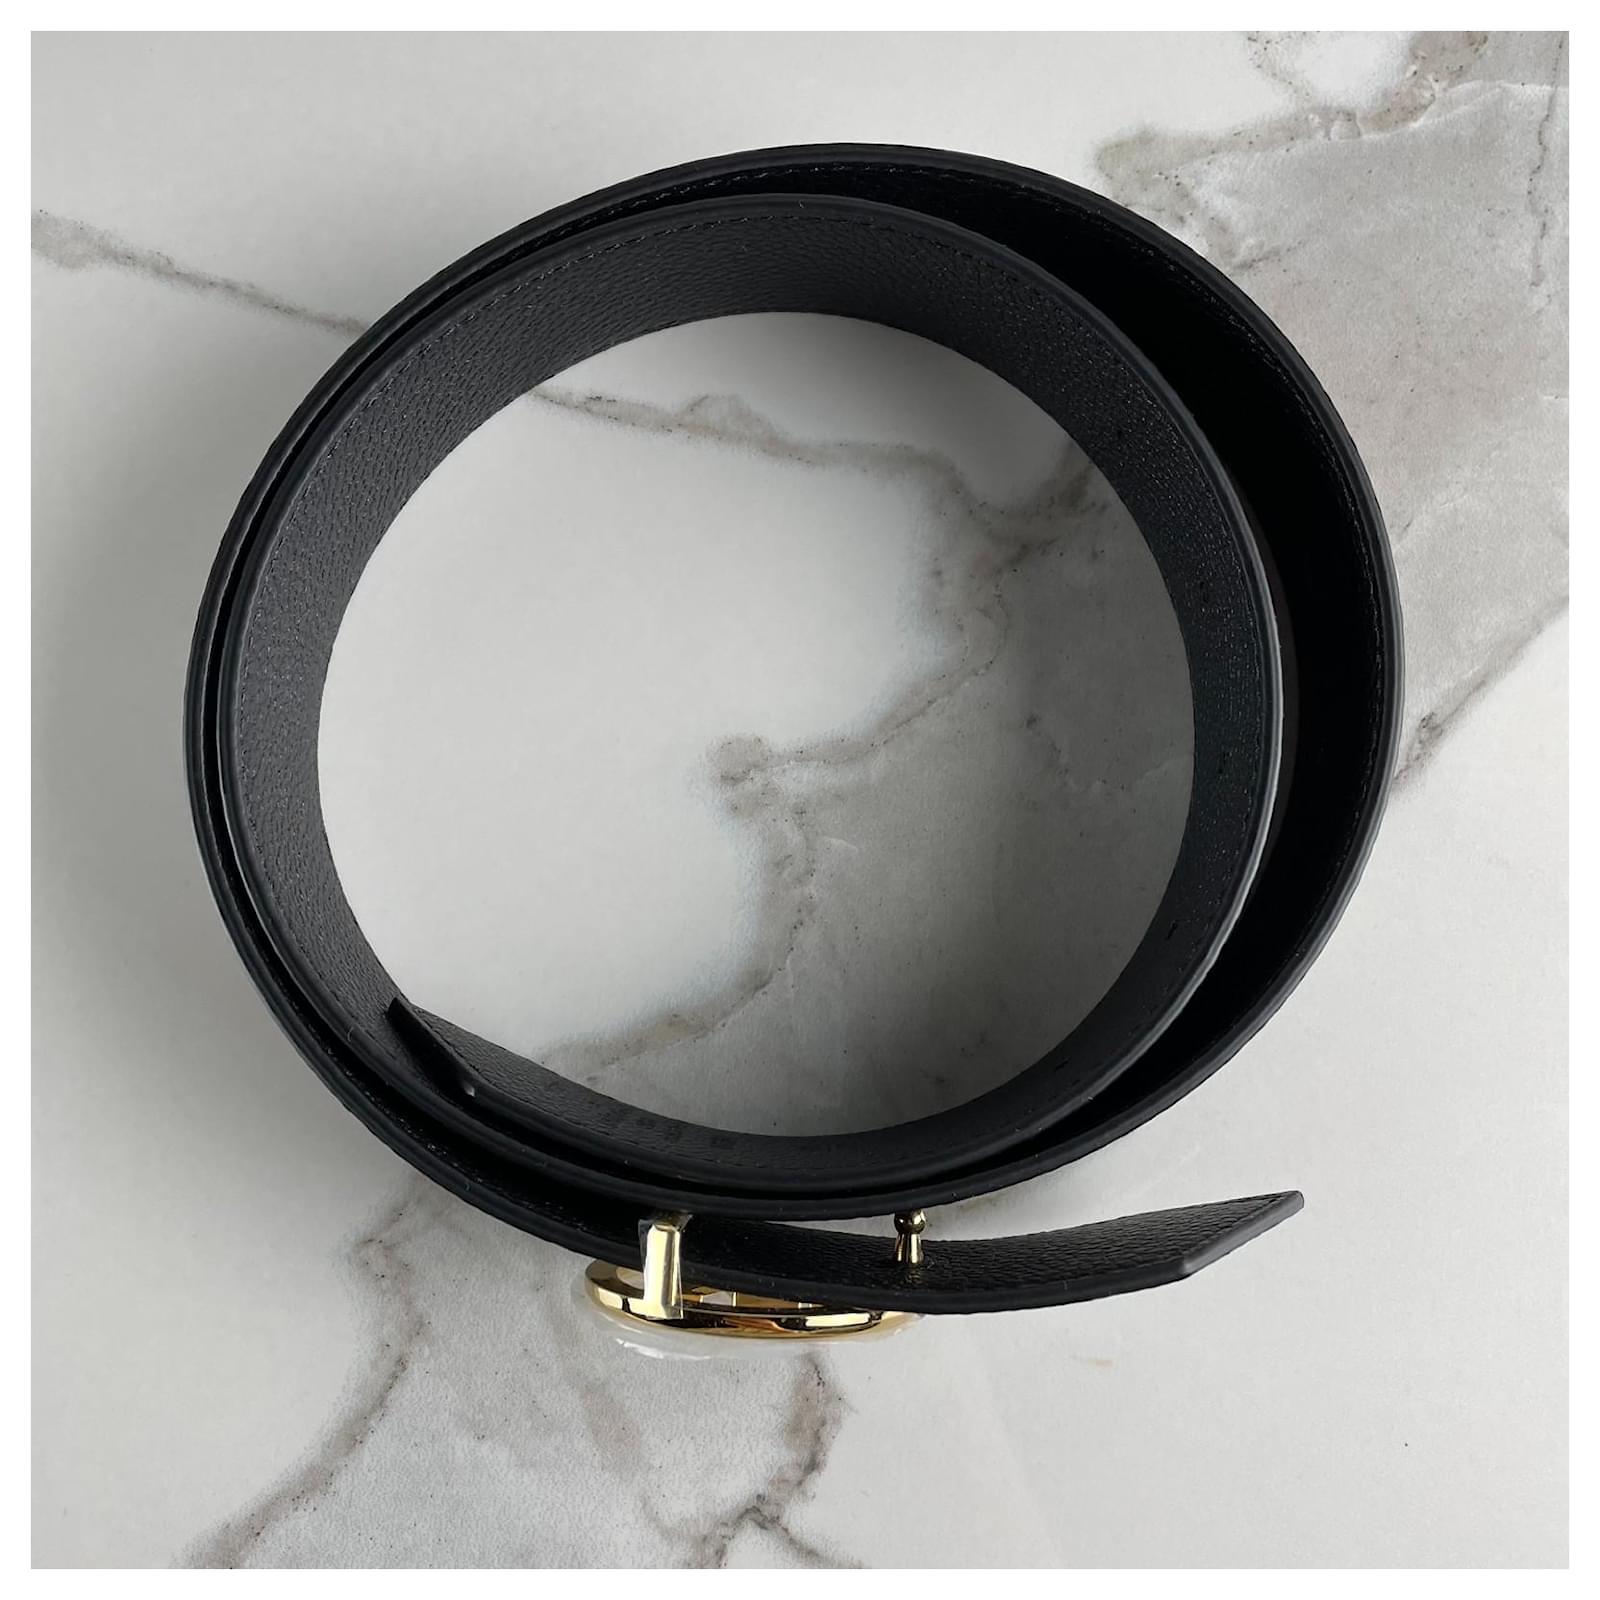 Louis Vuitton - LV Circle 35mm Reversible Belt - Monogram Canvas & Leather - Black - Size: 95 cm - Luxury